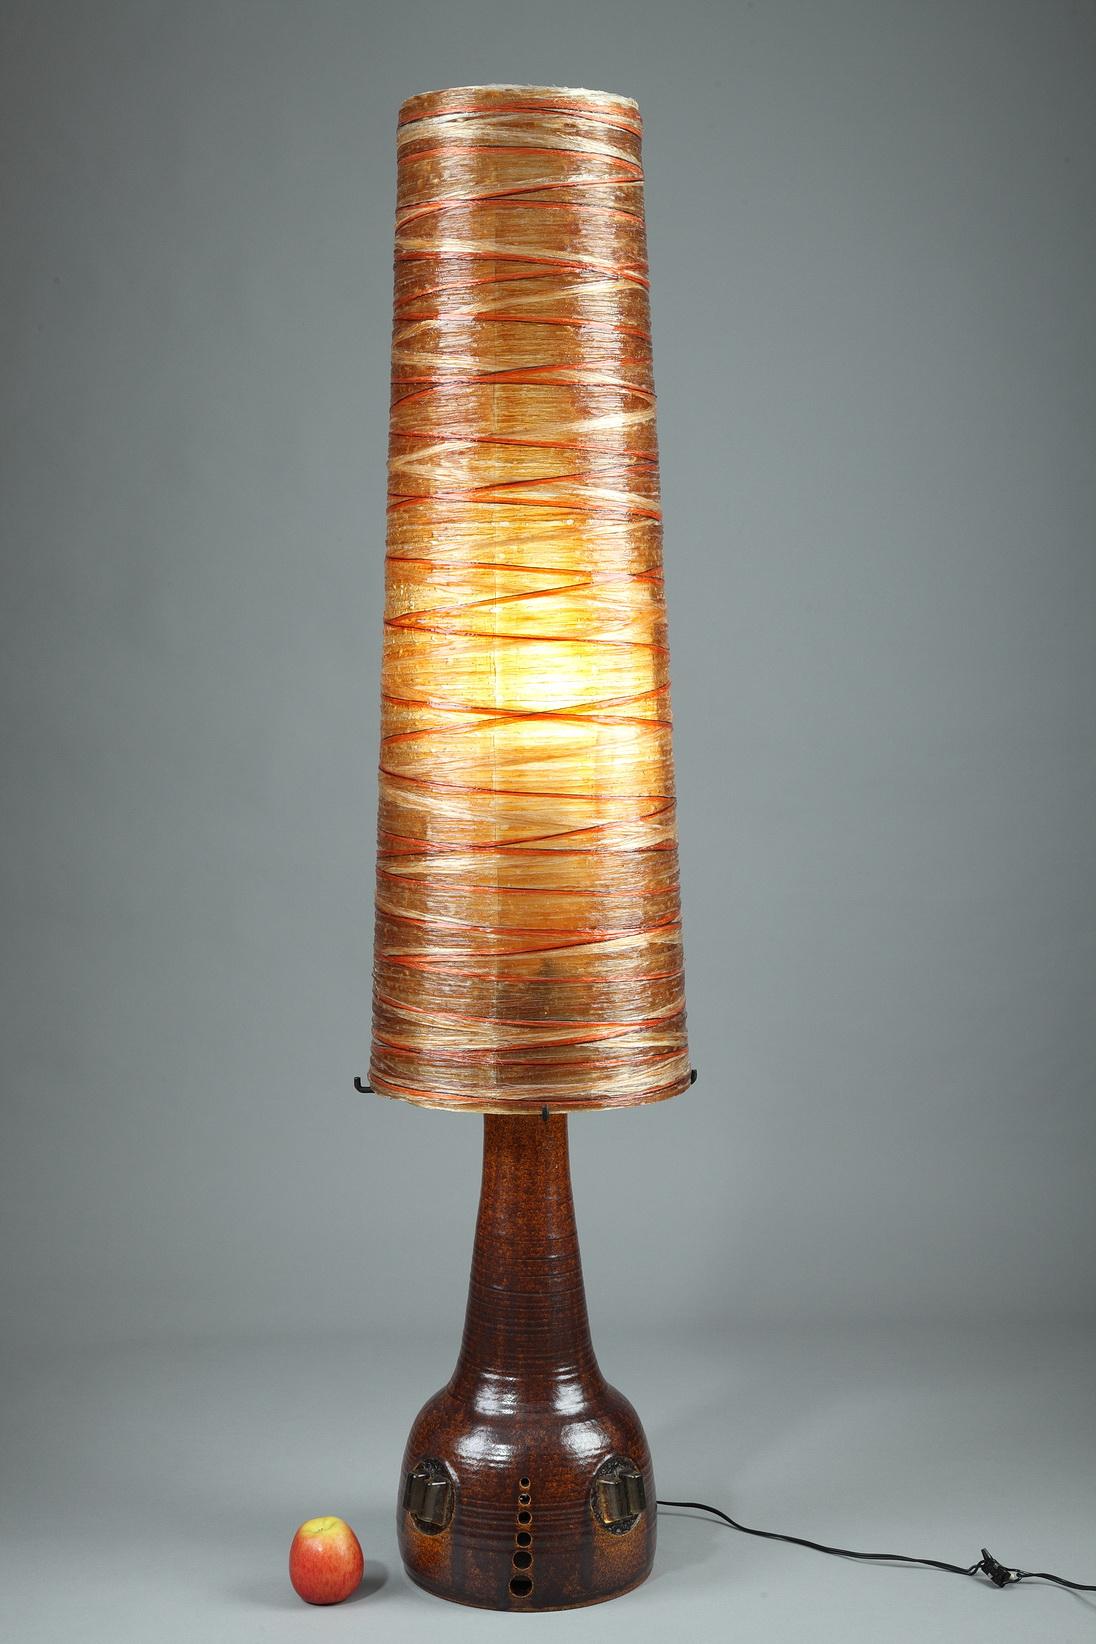 Grande lampe des ateliers Accolay composée d'une base en céramique patinée et d'un abat-jour conique en corde et en résine orange et noire. Cette belle lampe orange des années 1970 possède deux ampoules, l'une au centre de l'abat-jour et l'autre